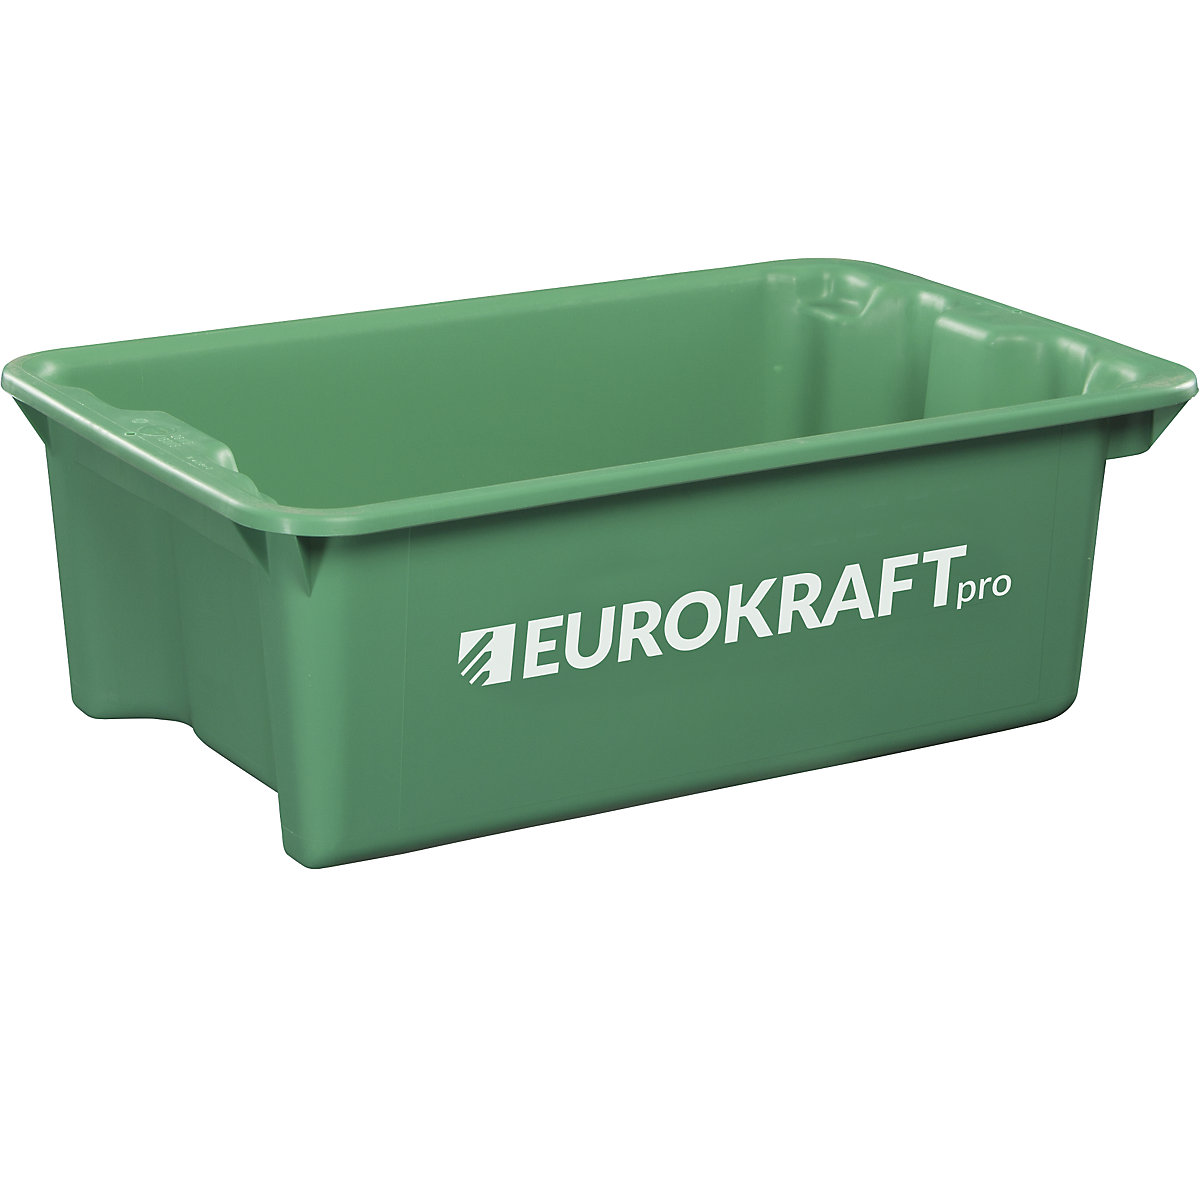 Contenitore impilabile girevole in polipropilene adatto per alimenti – eurokraft pro, capacità 34 litri, conf. da 3 pz., pareti e fondo chiusi, verde